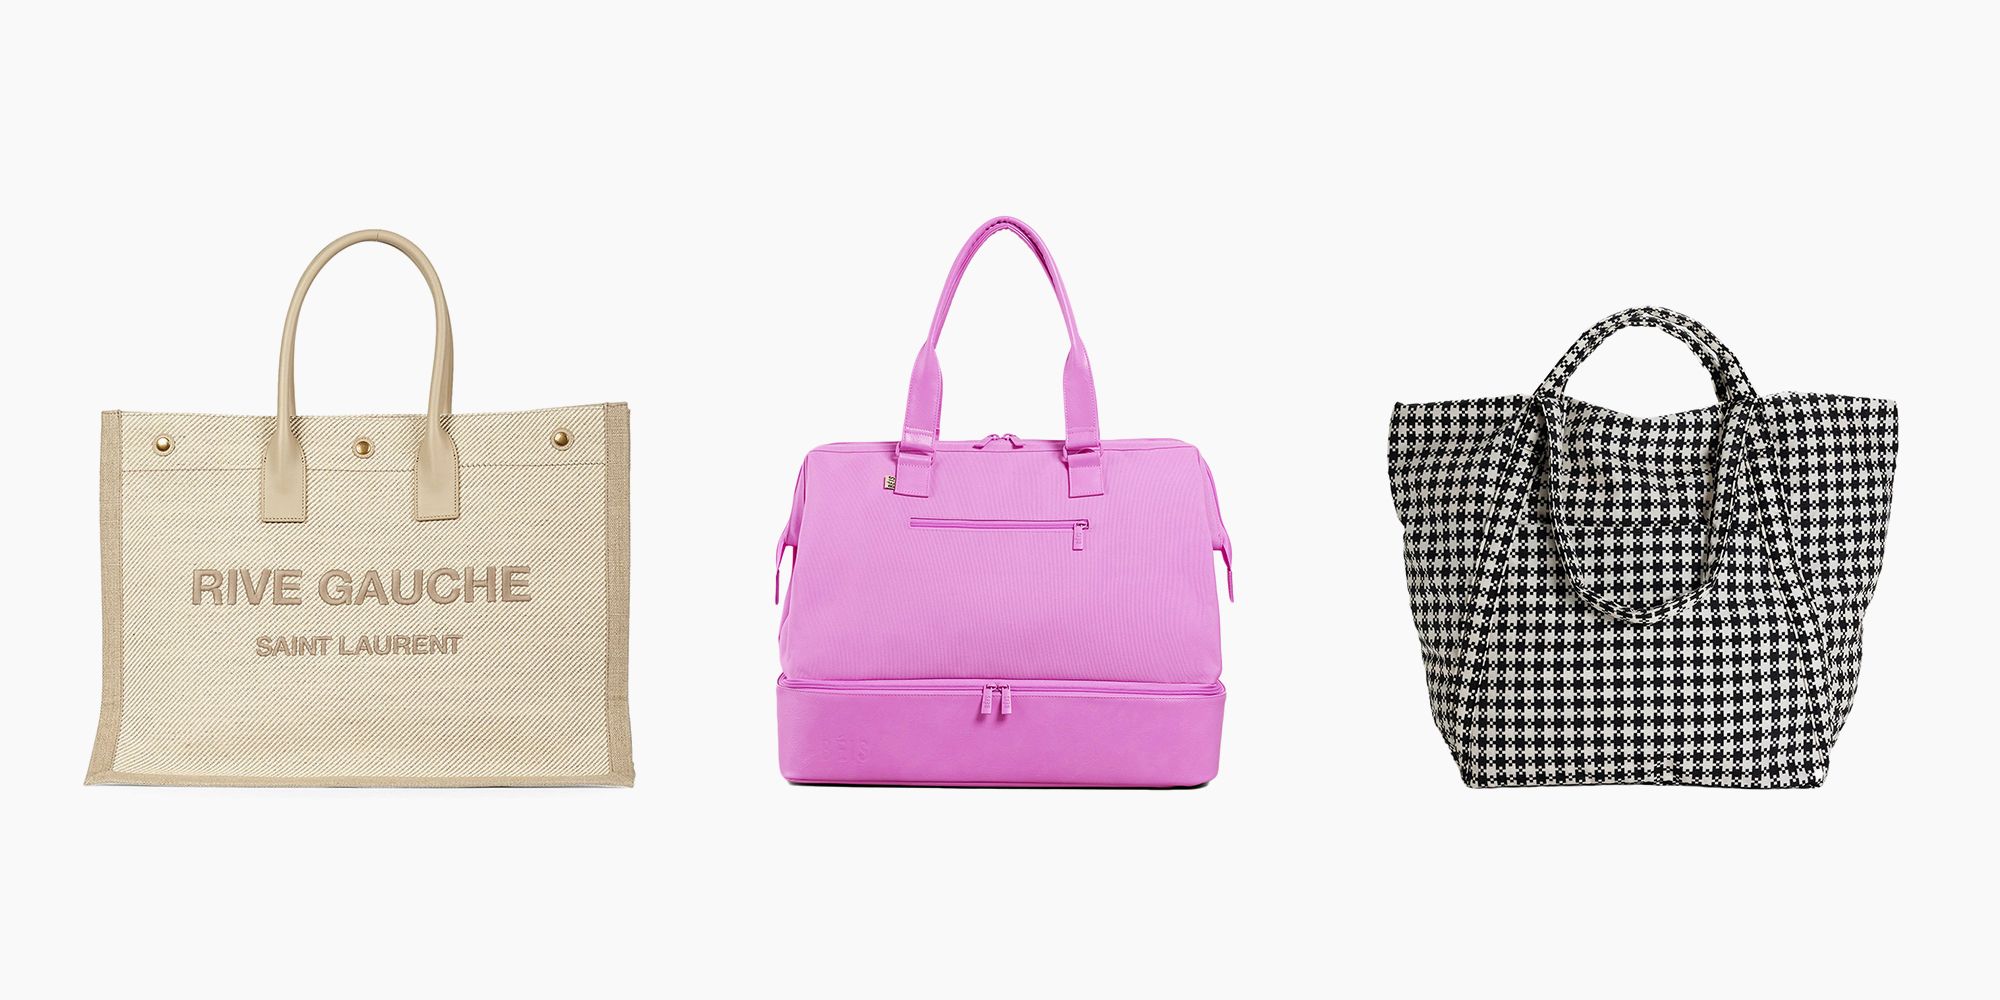 Travel Bags - Designer Travel Bags for Women